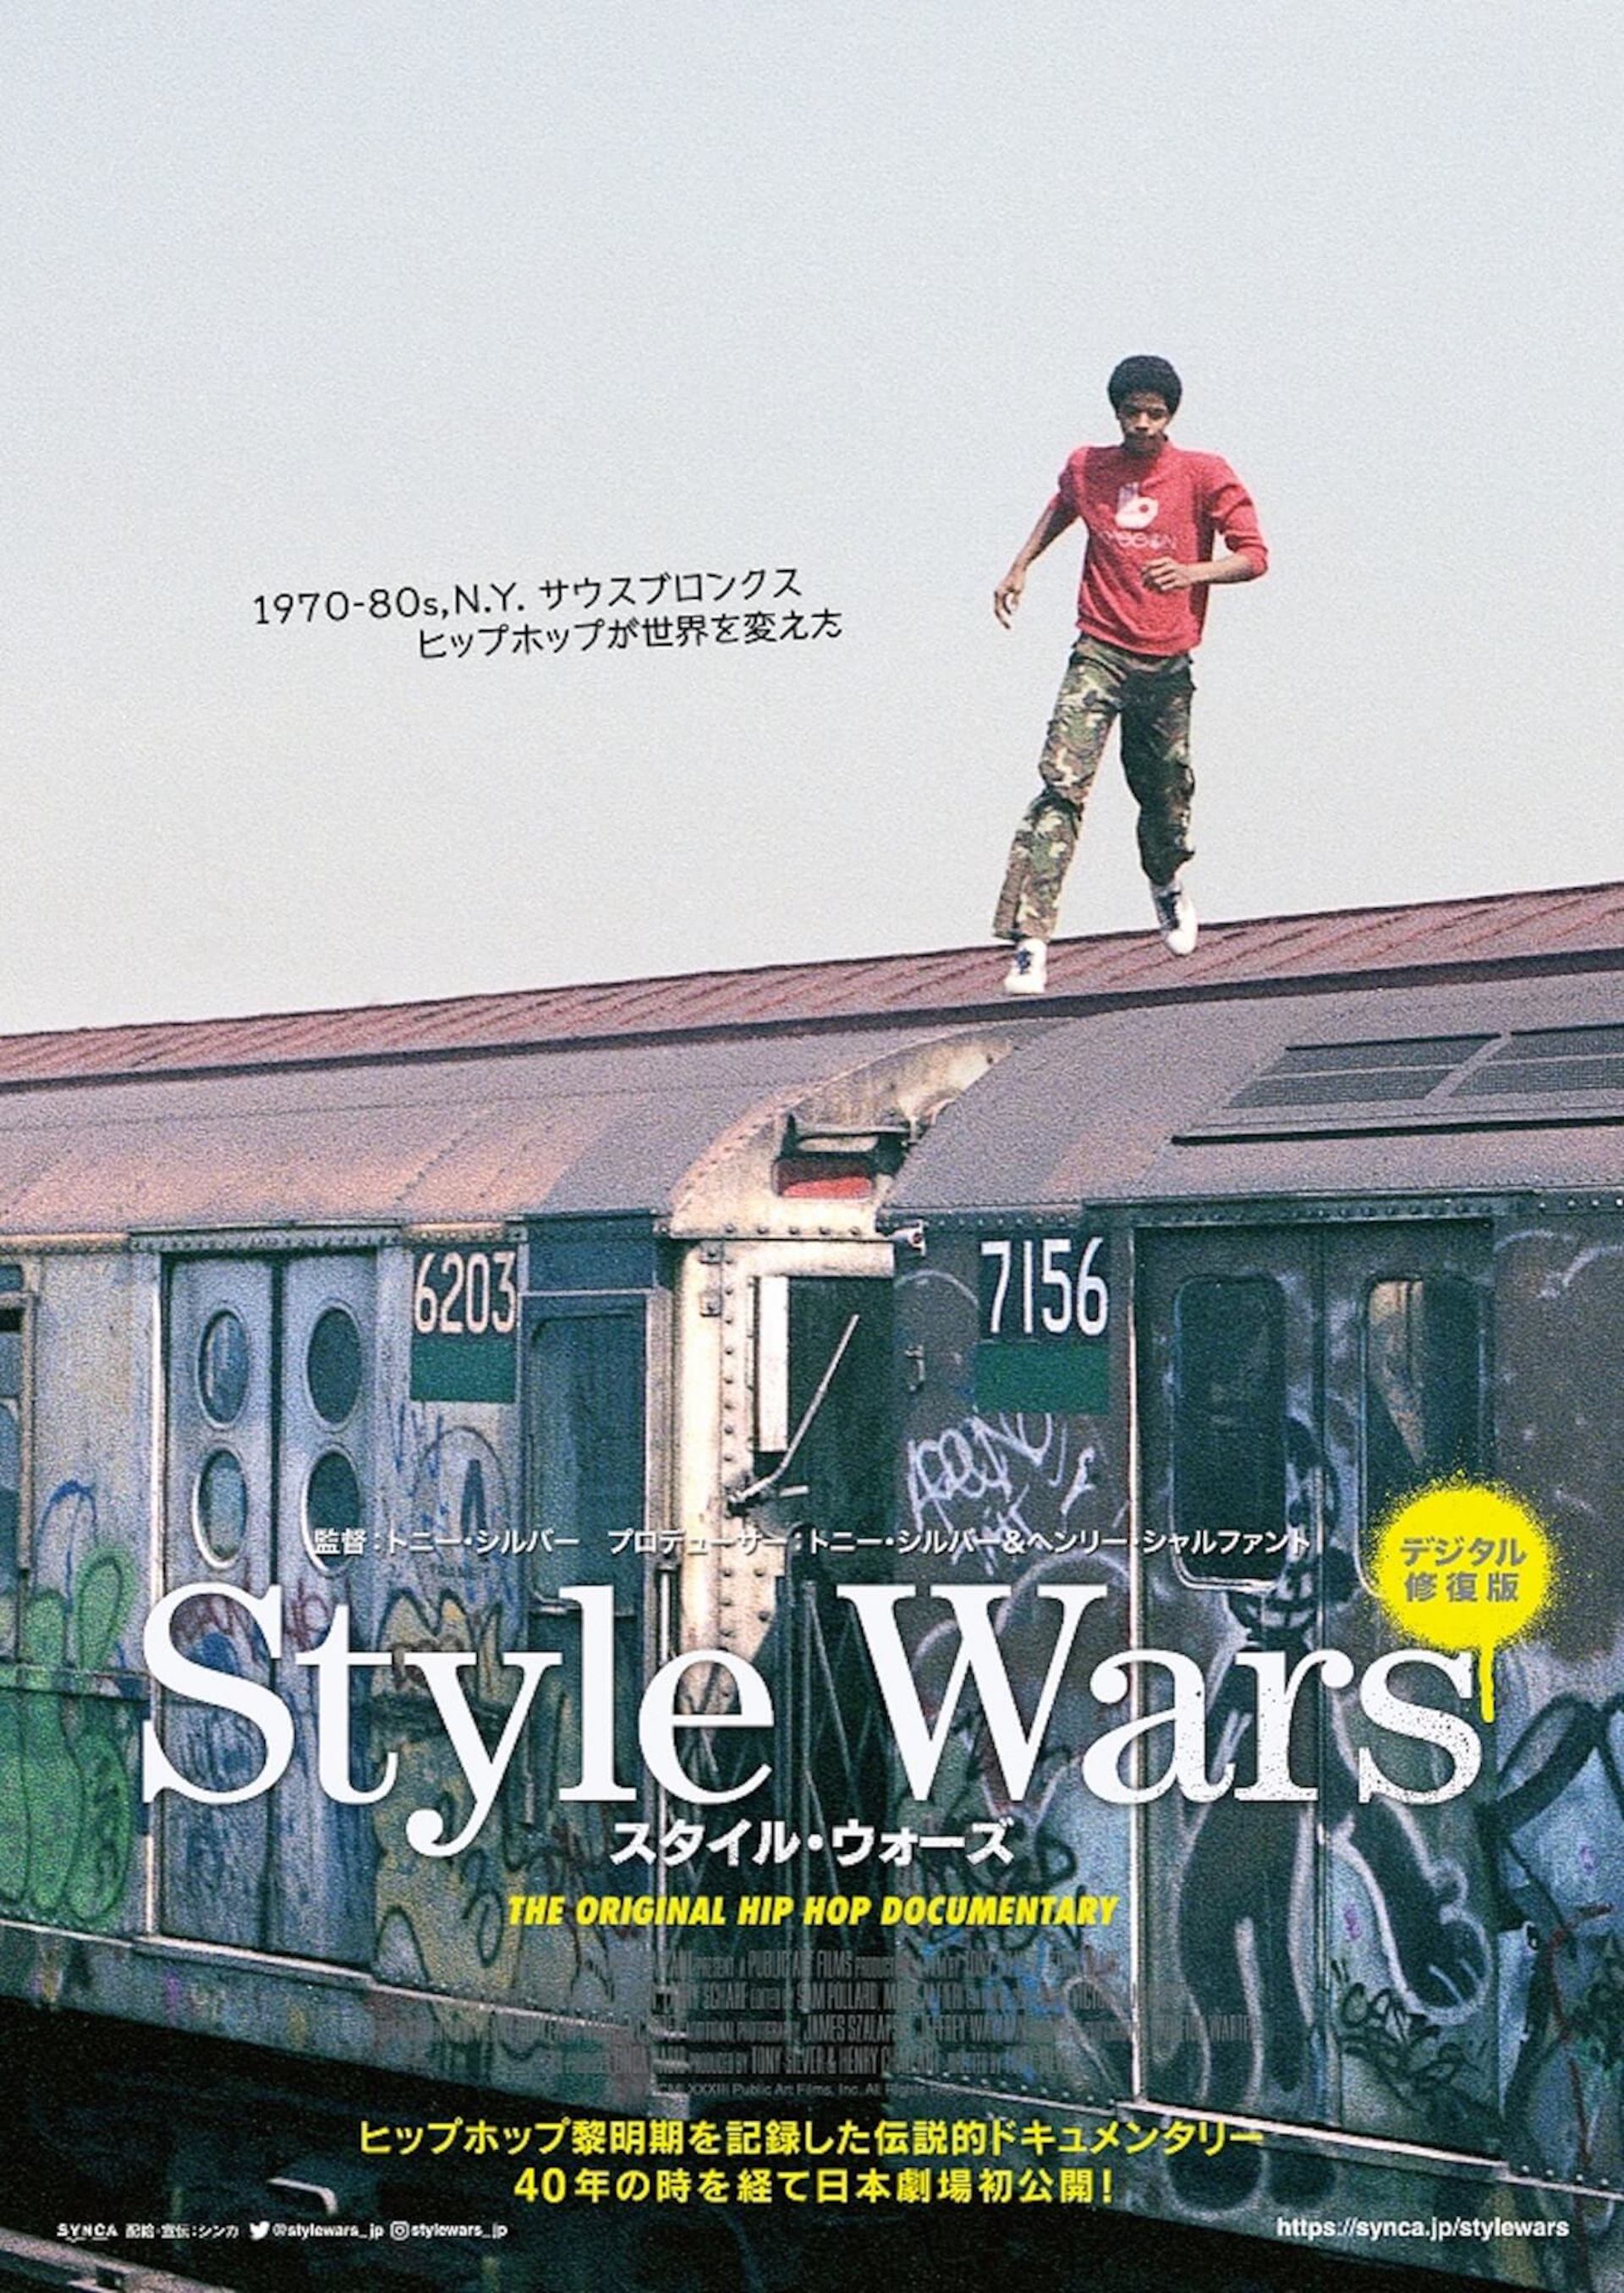 ヒップホップ誕生の歴史を記録した伝説のドキュメンタリー『Style Wars』が日本劇場初公開